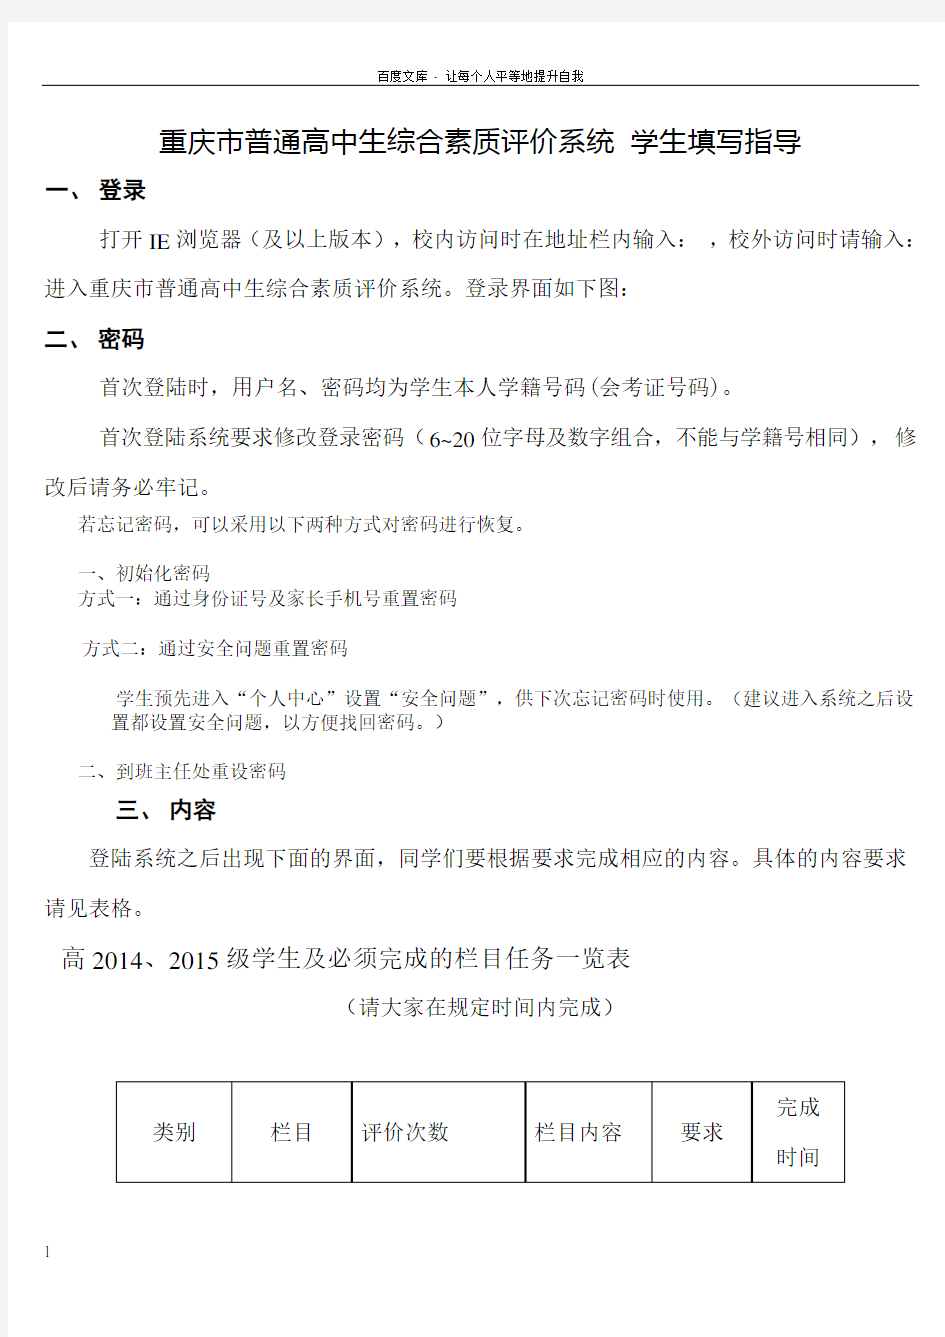 重庆市普通高中生综合素质评价系统学生填